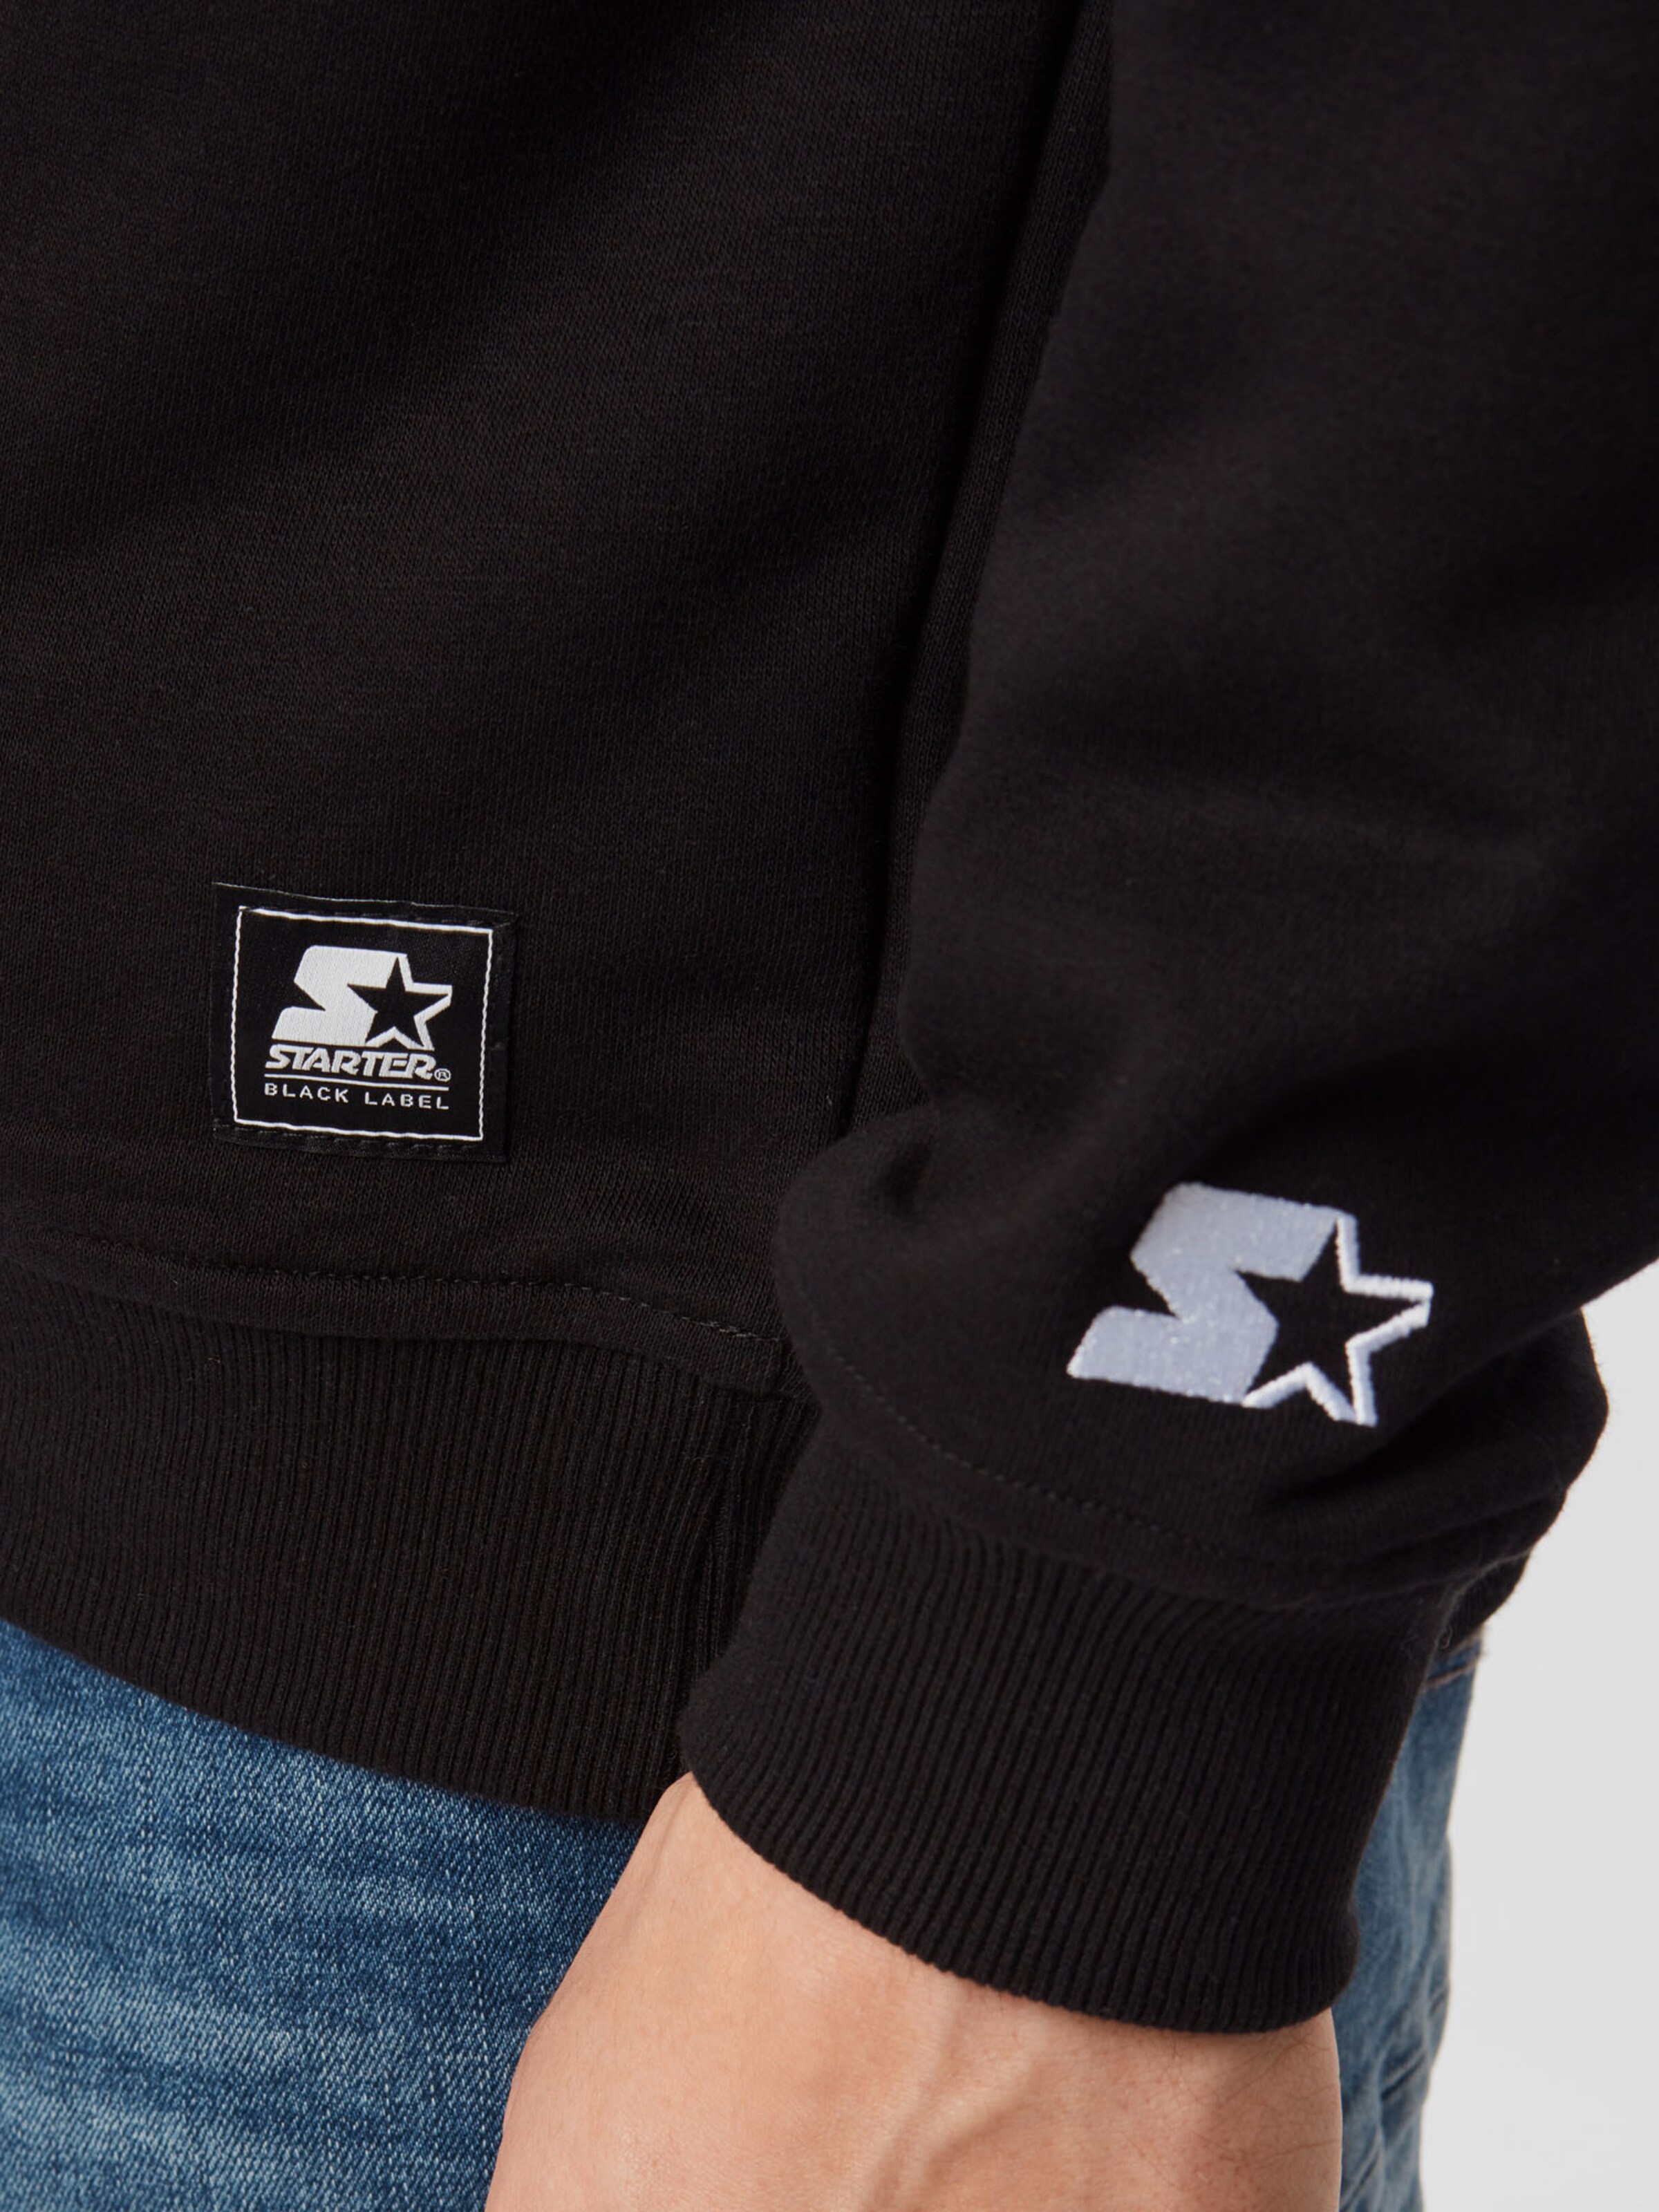 Sweats Sweatshirt Starter Black Label en Noir 